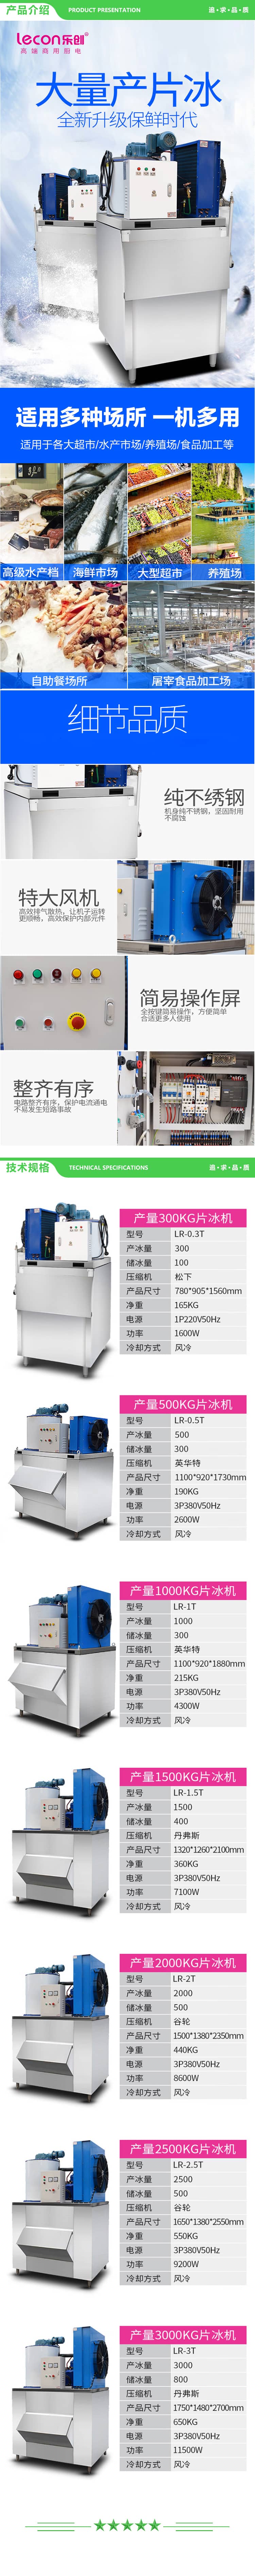 乐创 lecon LR-1.5T 制冰机商用海鲜保鲜片冰机大产量 1500KG制冰机 2.jpg